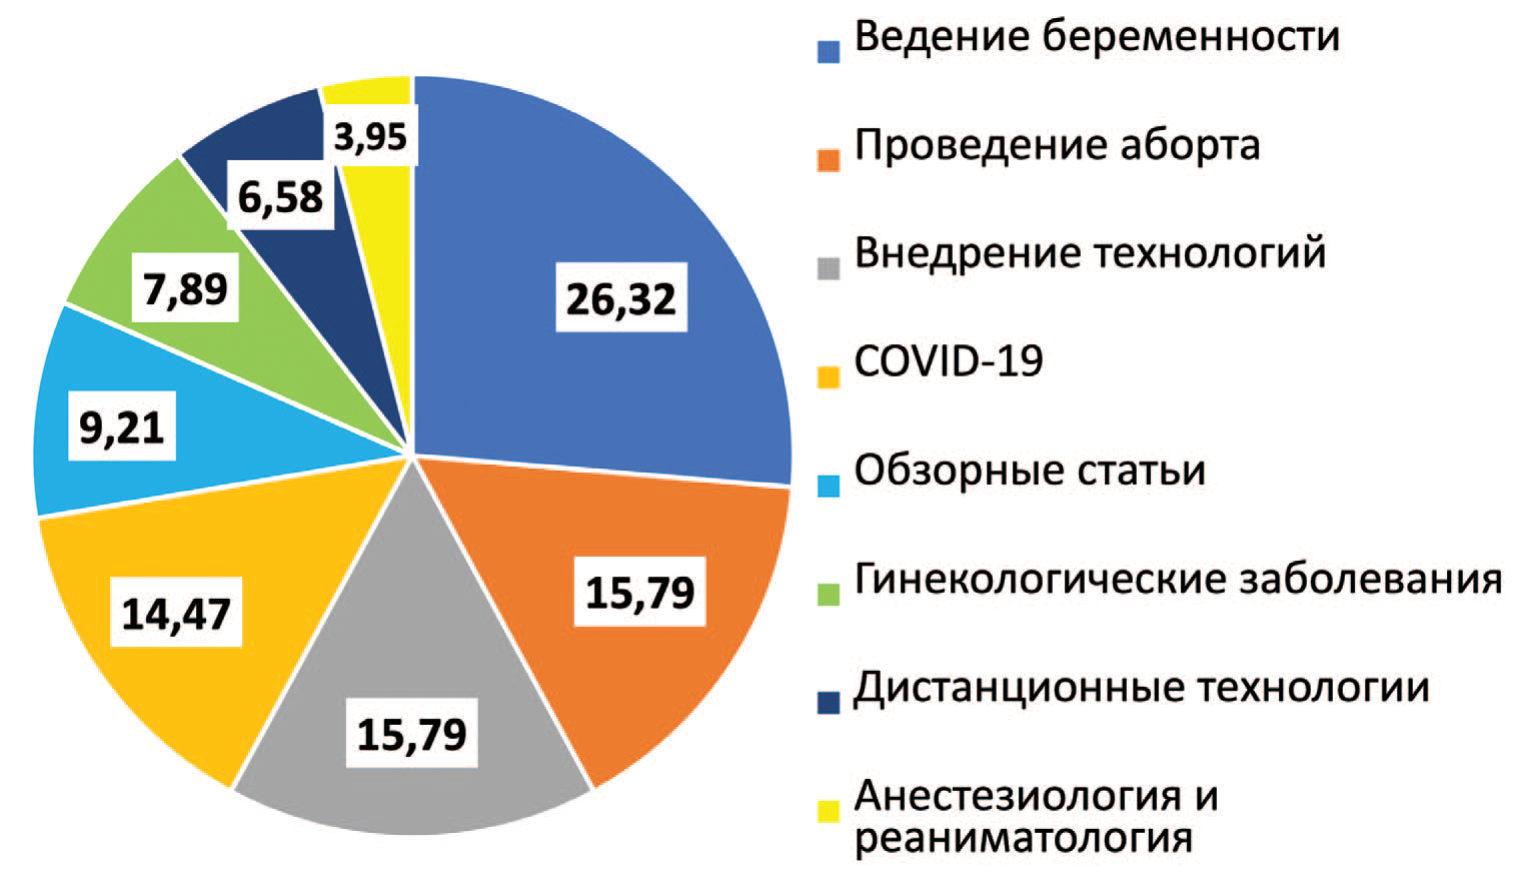 Основная тематика публикаций, посвященных телеакушерству и телегинекологии, за 1999-2020 г. 